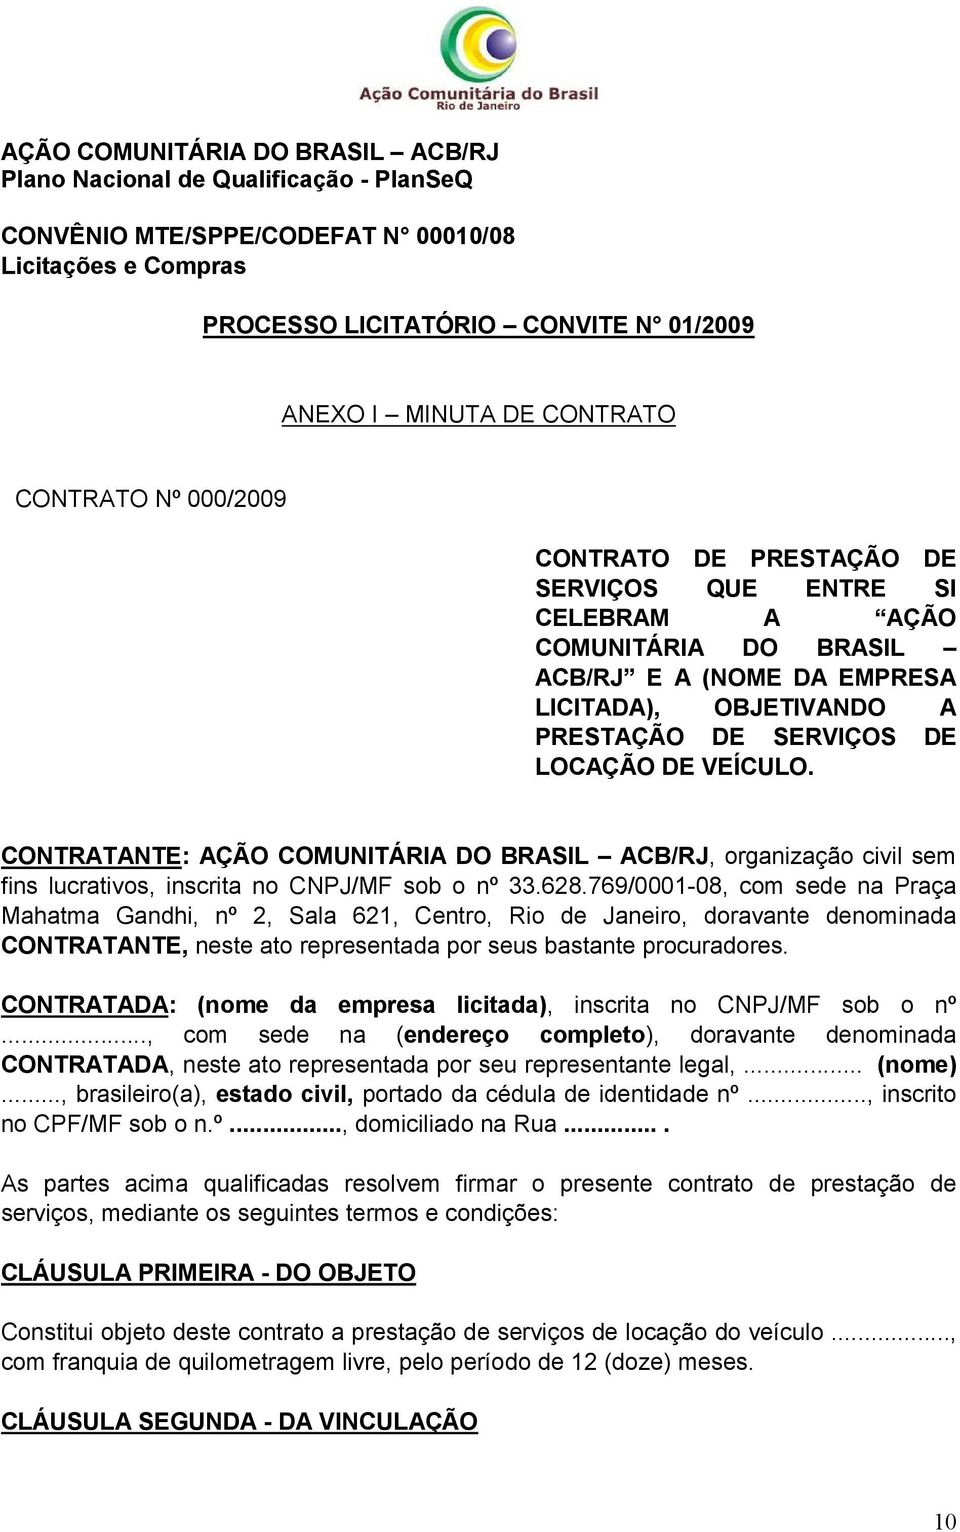 CONTRATANTE: AÇÃO COMUNITÁRIA DO BRASIL ACB/RJ, organização civil sem fins lucrativos, inscrita no CNPJ/MF sob o nº 33.628.